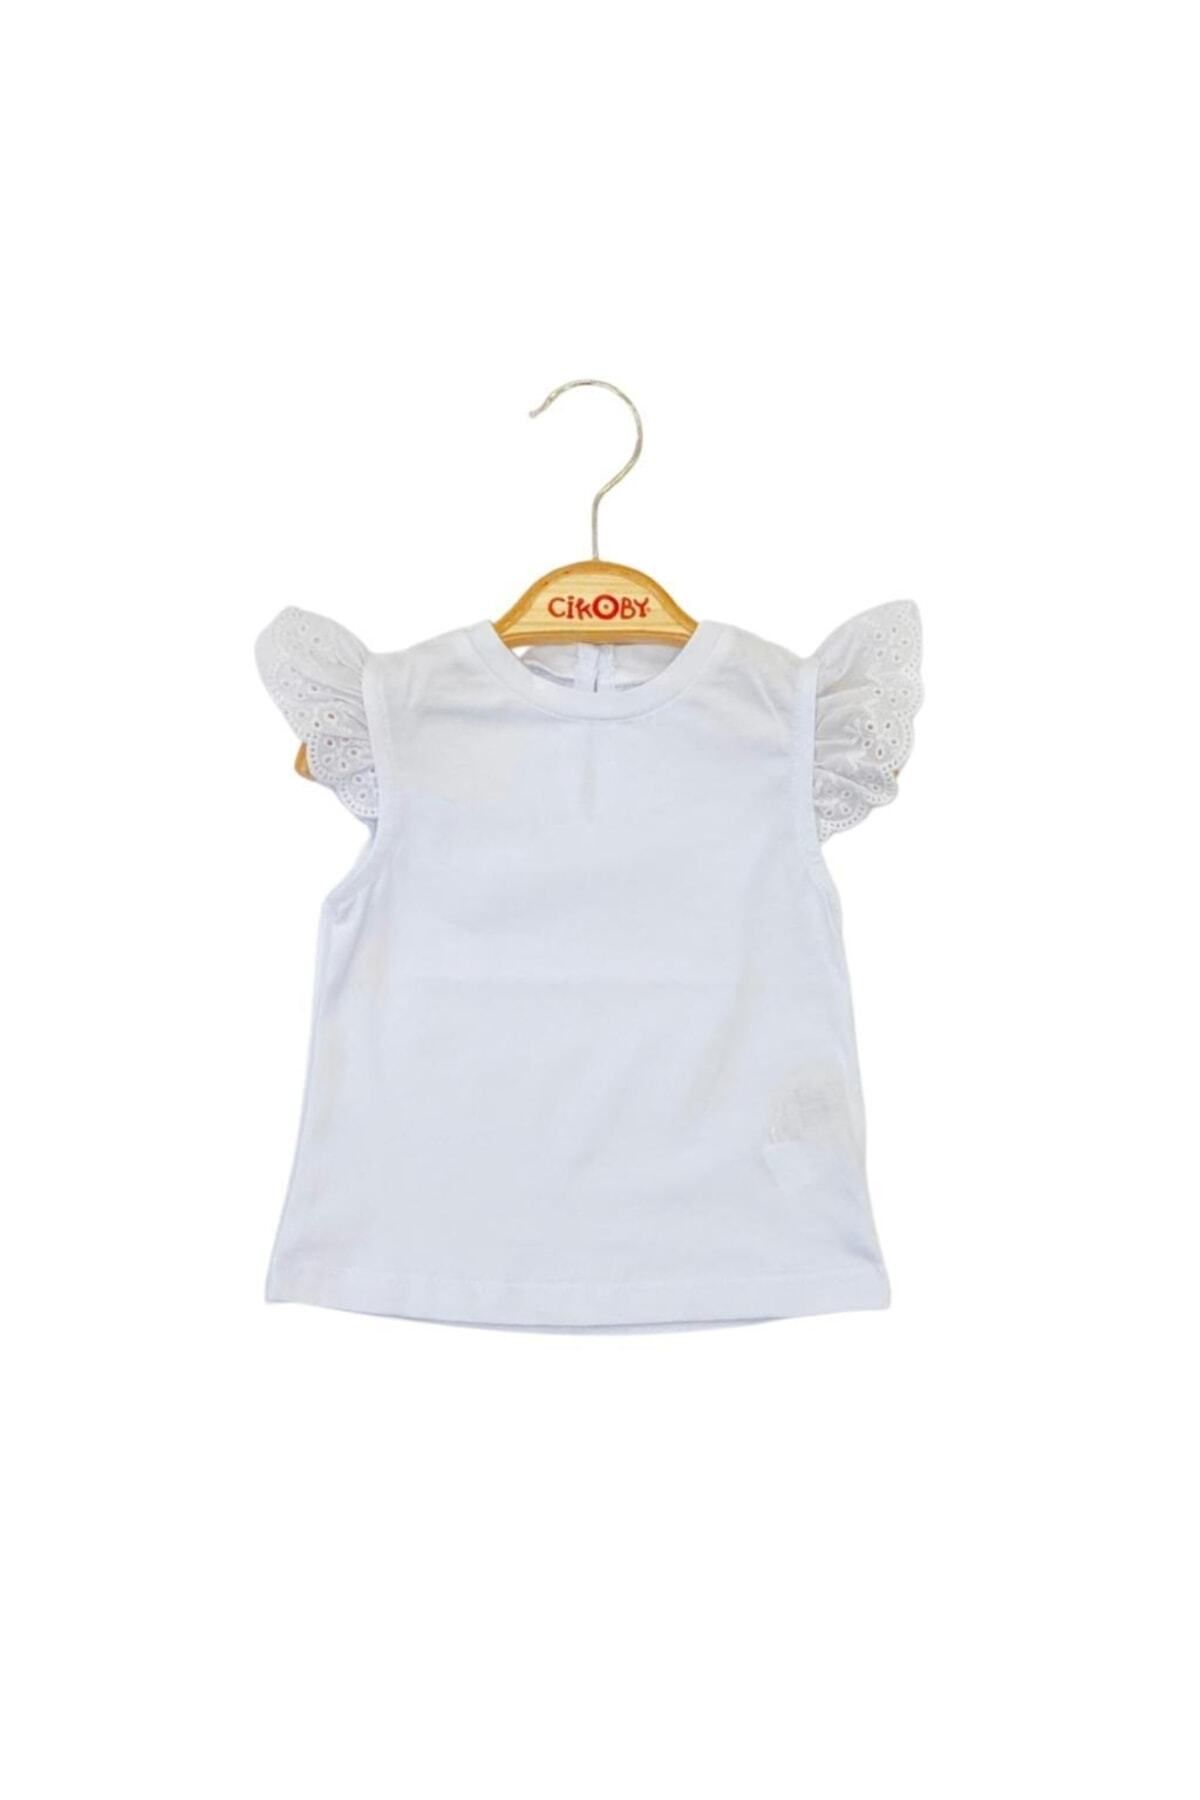 çikoby Digidi Kids Kiz Bebek Kollari Fiistolu Beyaz T-shirt 6-24 Ay